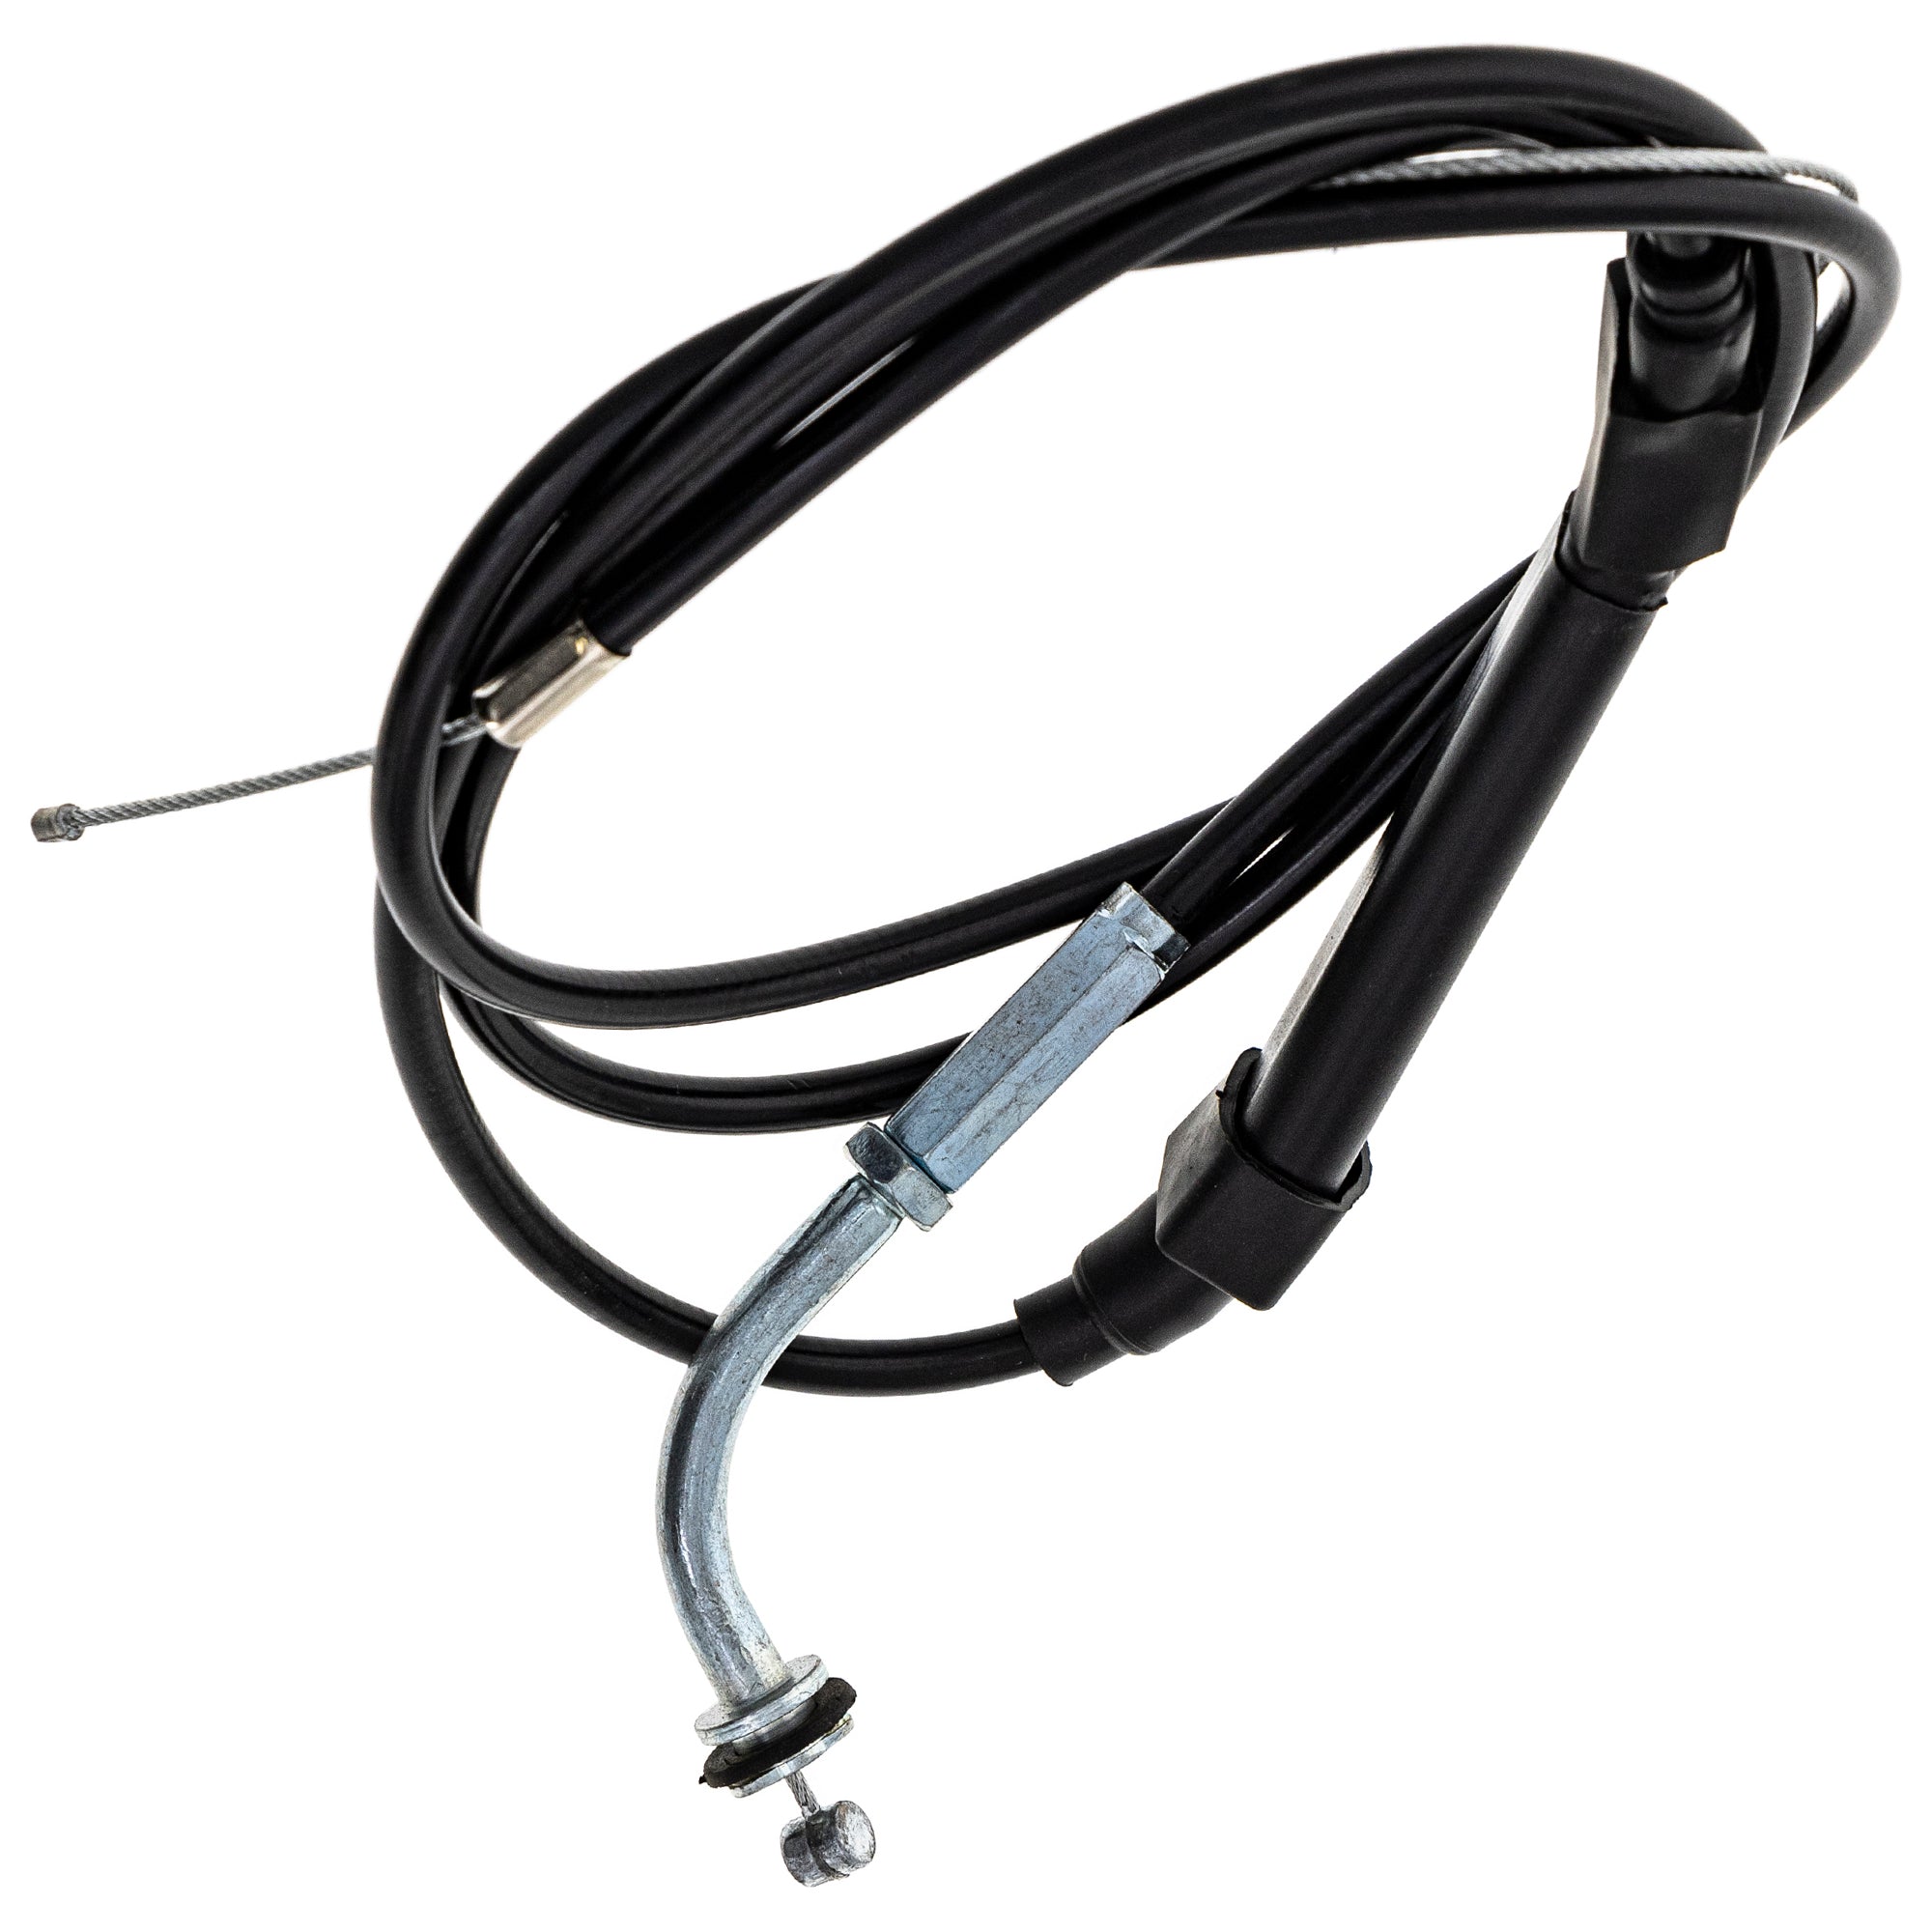 Throttle Cable for Suzuki RV125 TC125 TS125 TS185 58300-28002